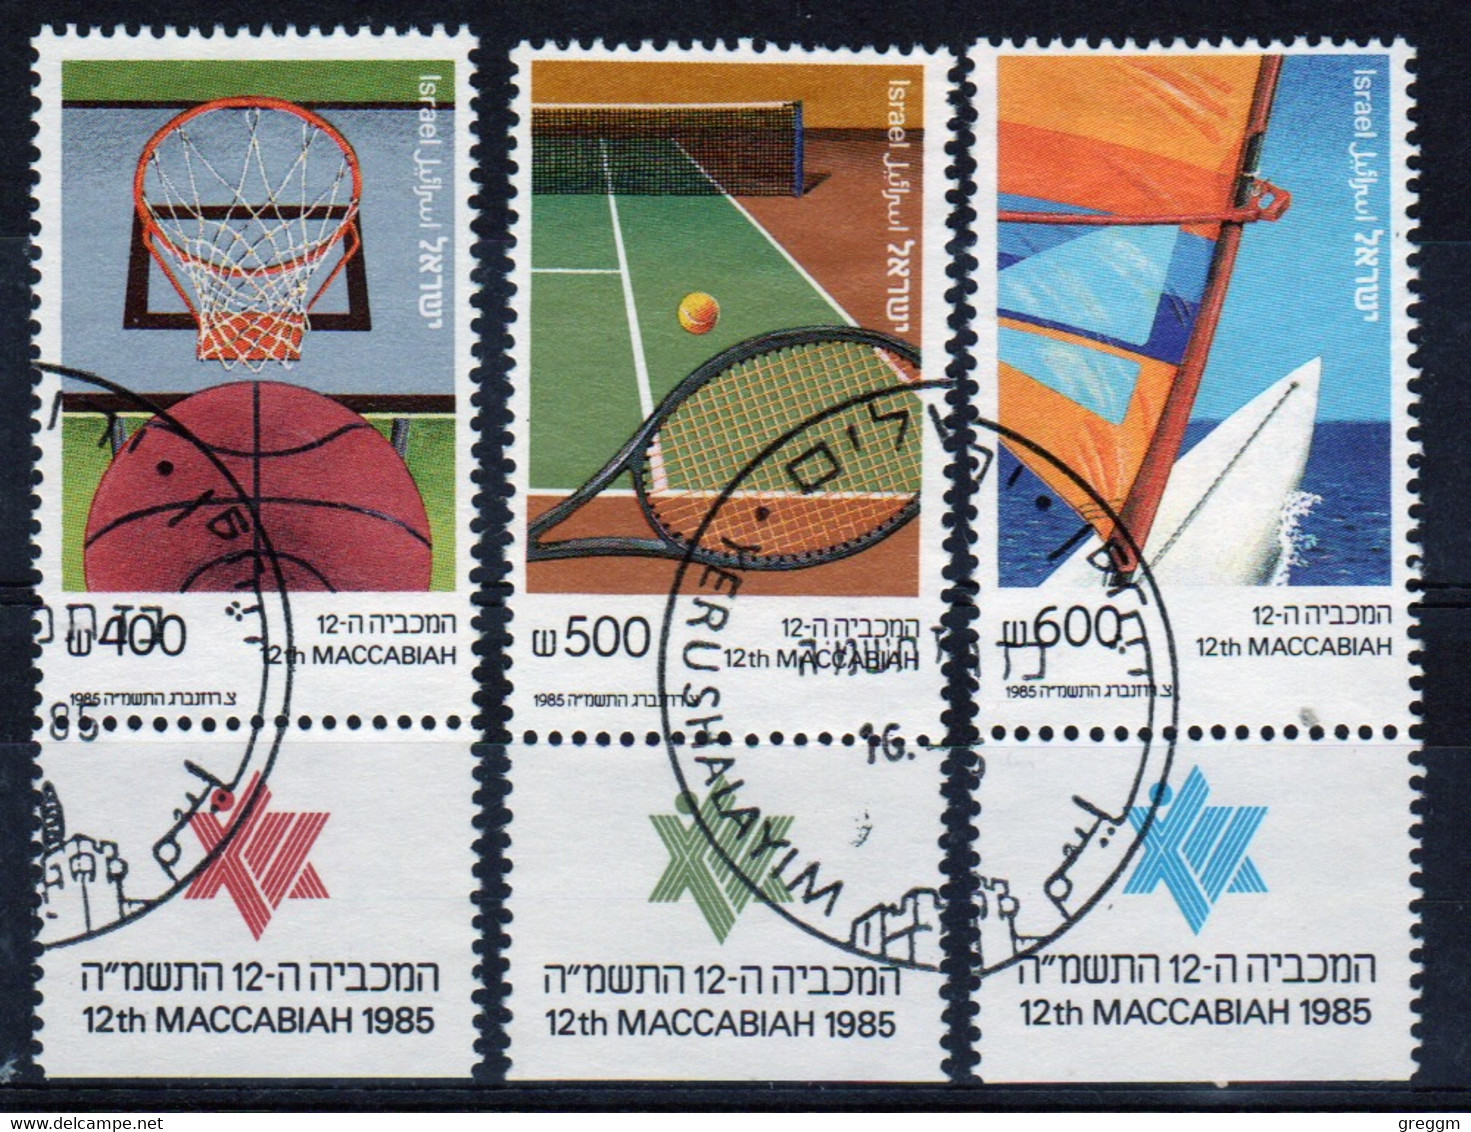 Israel Set Of Stamps From 1985 To Celebrate Makkabiade Games In Fine Used With Tabs - Gebruikt (met Tabs)